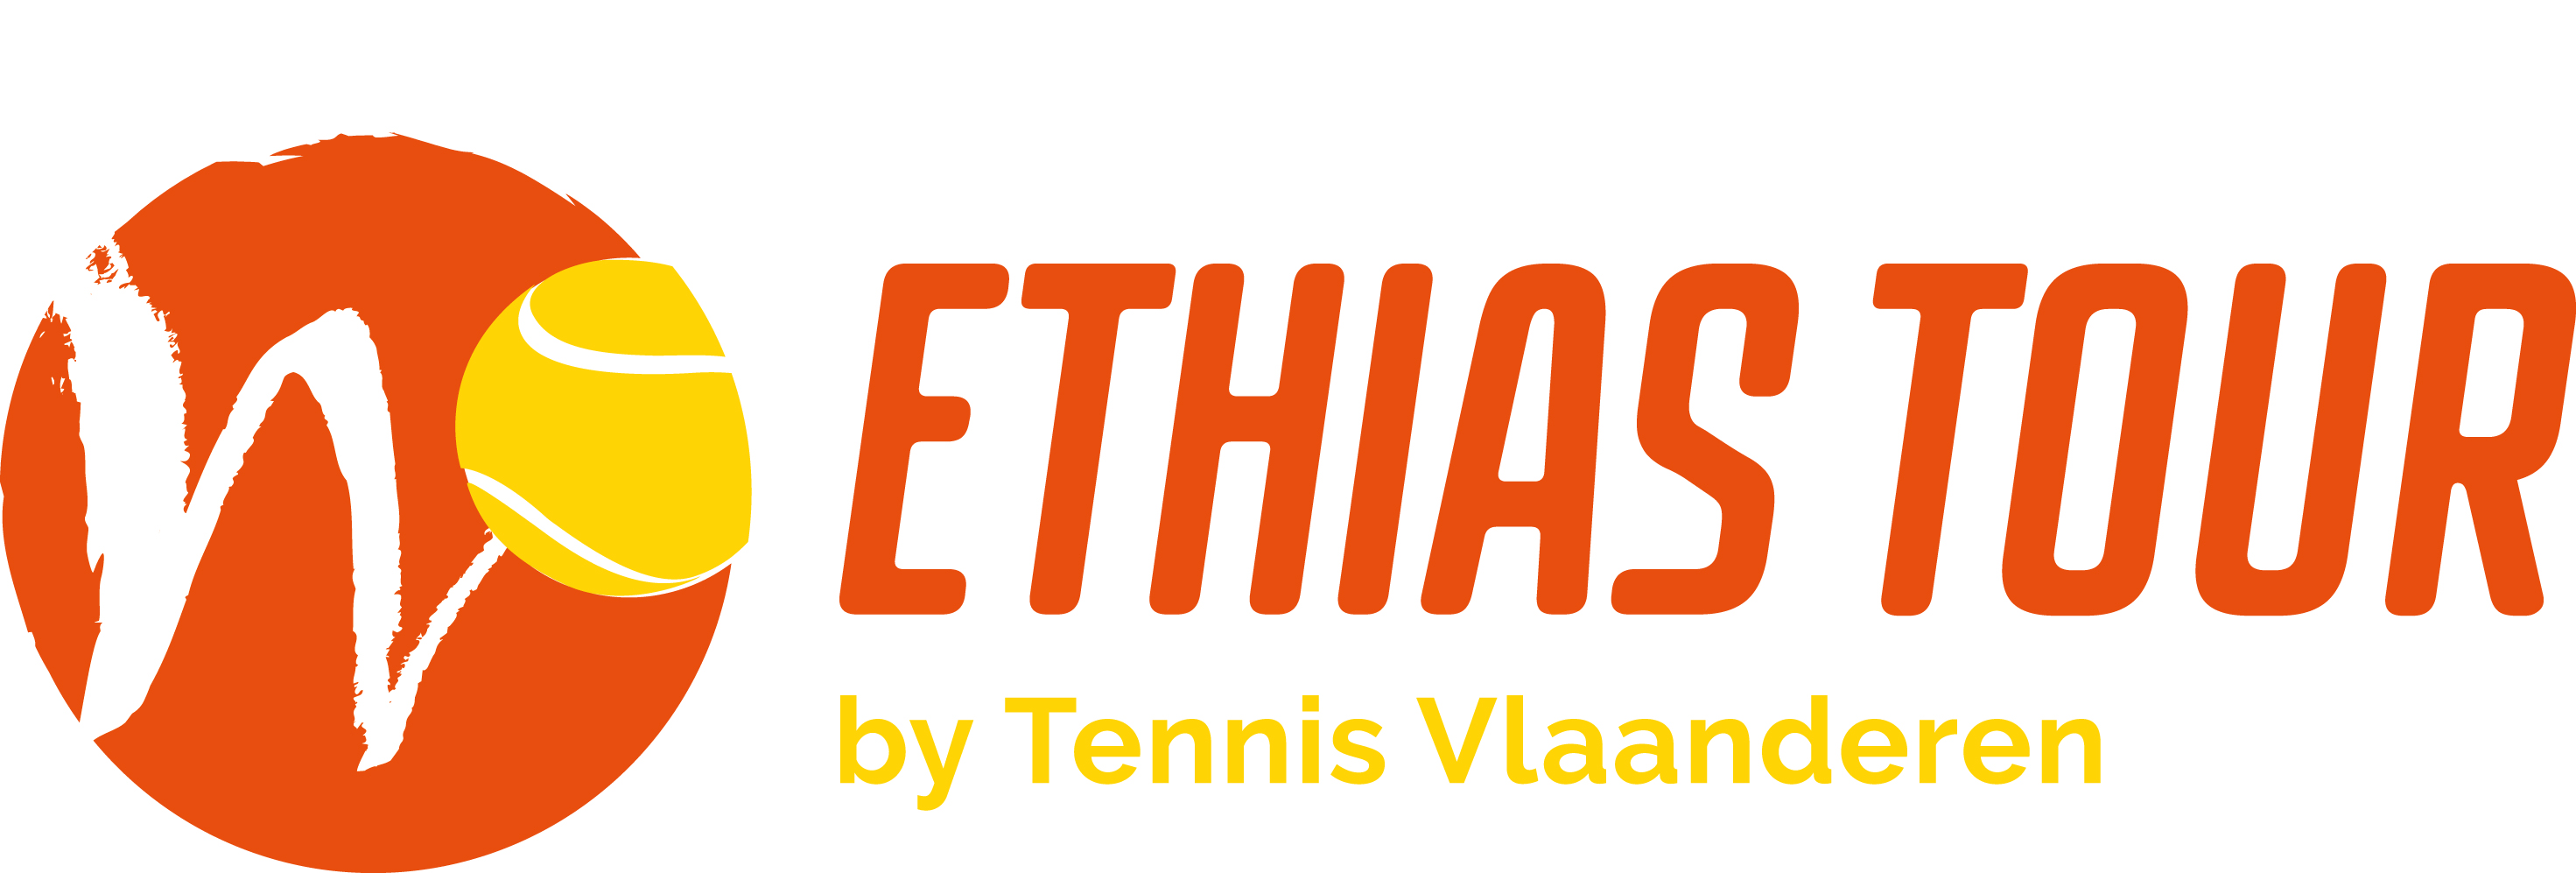 racso tennisschool ethias tour